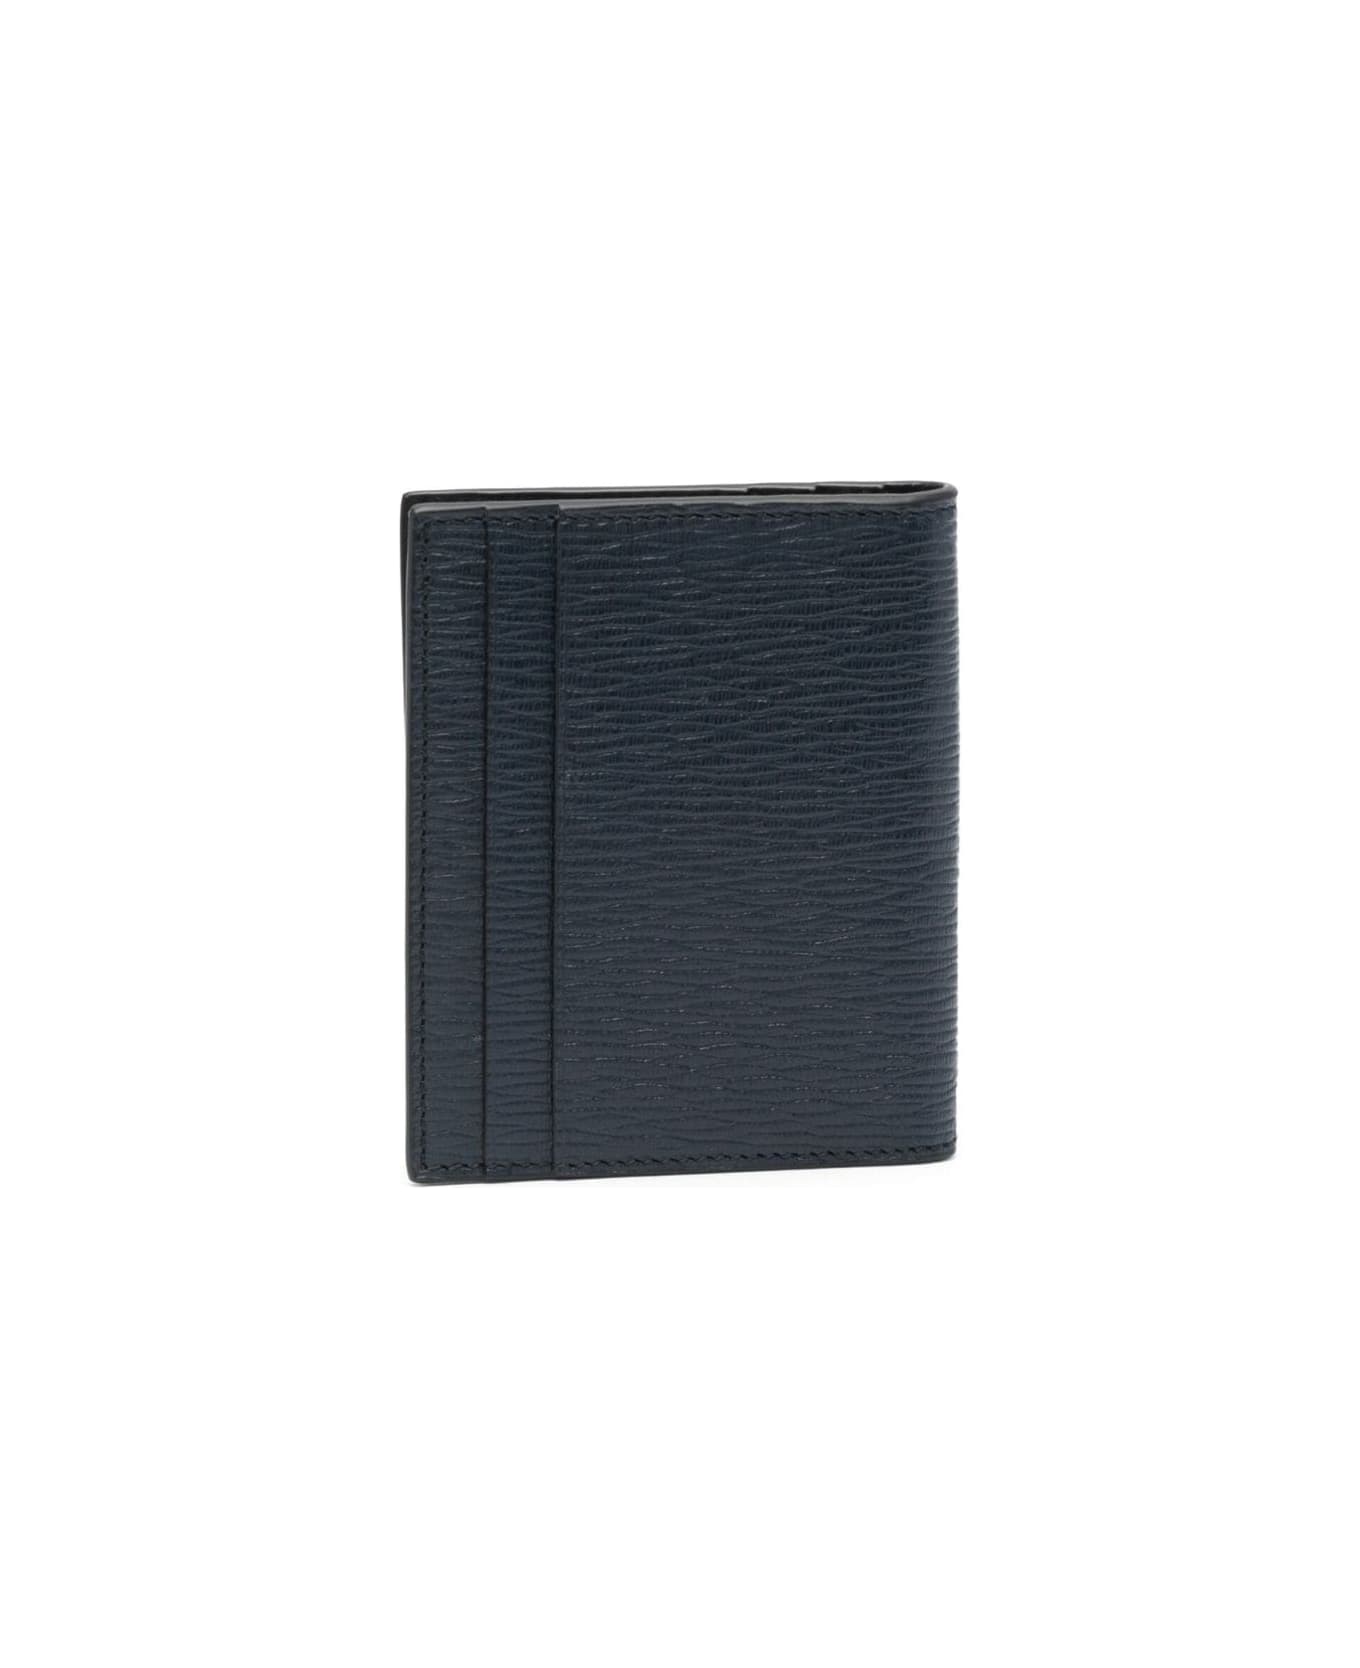 Ferragamo Blue Cardholder With Silver-tone Gancini Logo In Calf Leather Man - Blu 財布